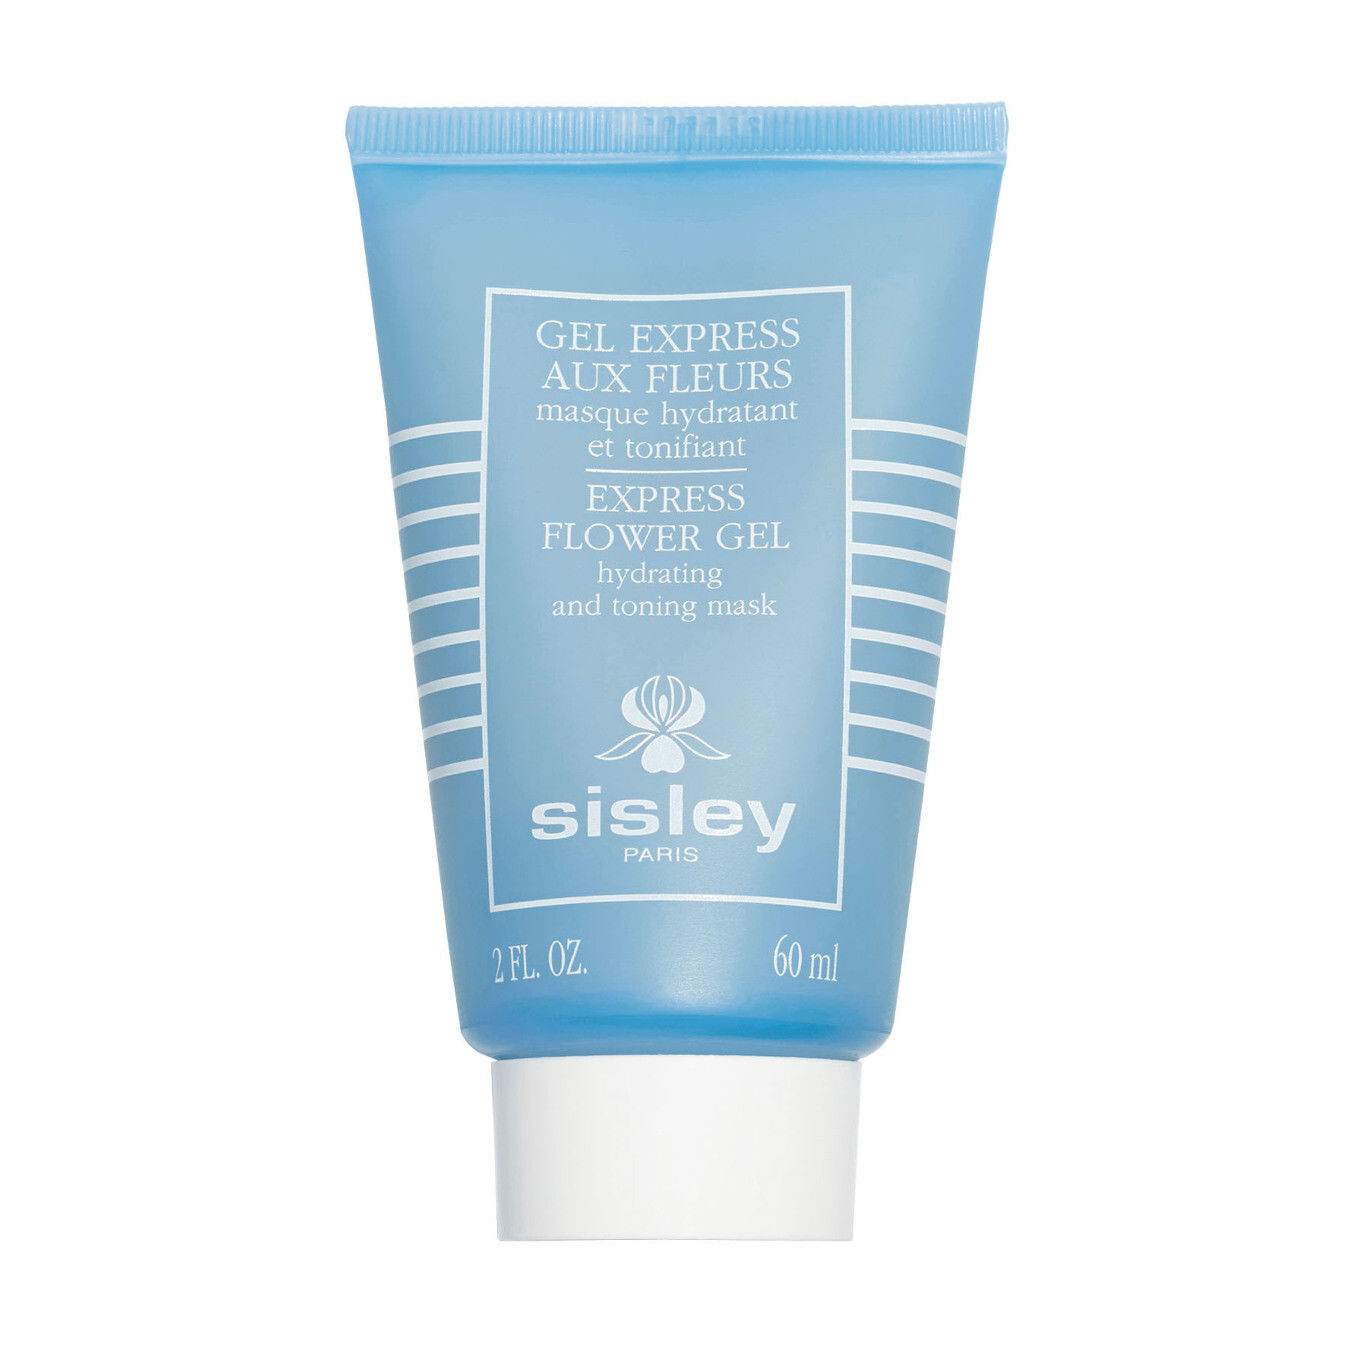 Sisley Gel Express aux Fleurs masque hydratant et tonifiant von Sisley